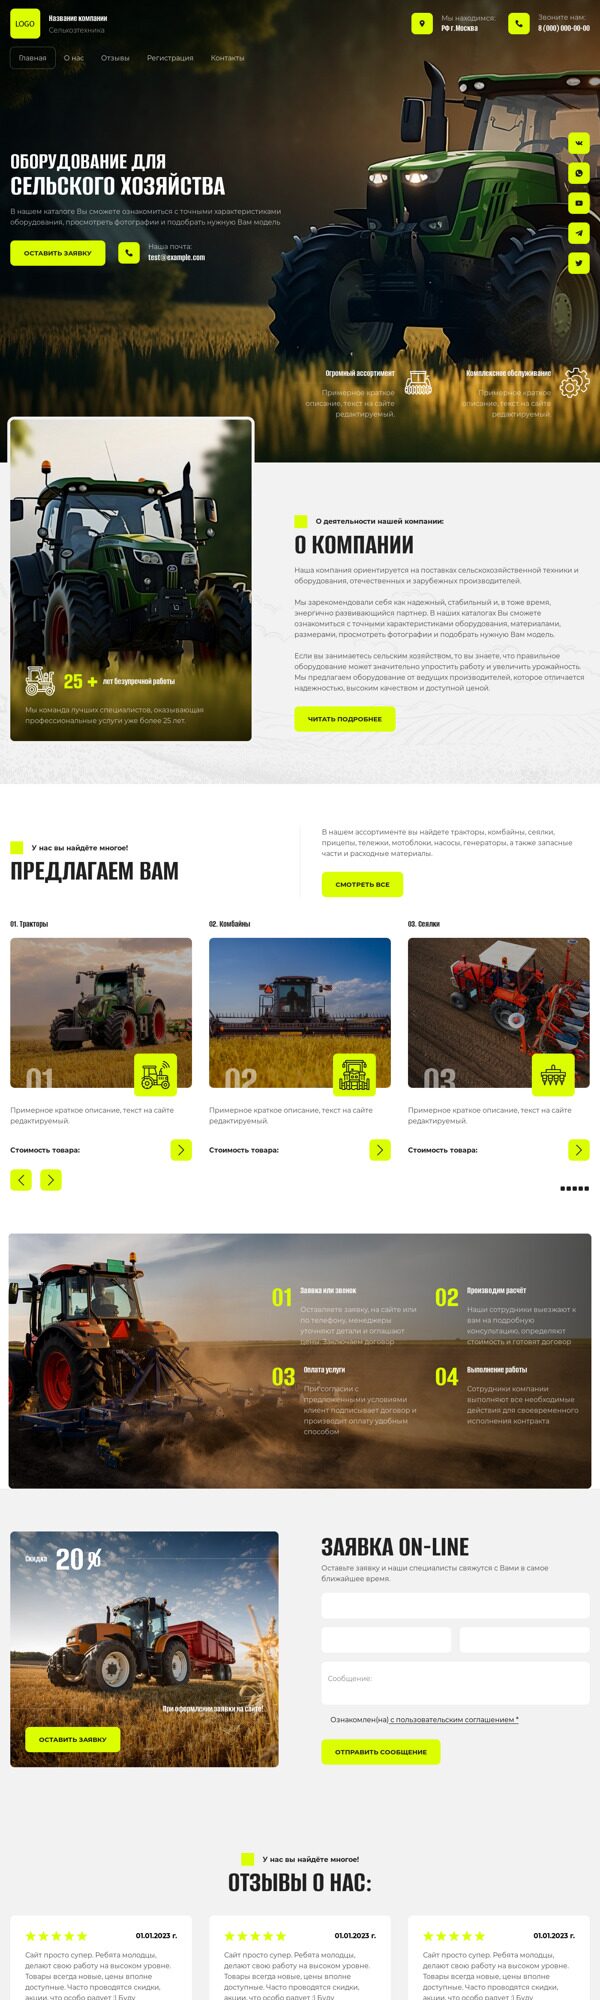 Готовый Сайт-Бизнес № 4998365 - Оборудование для сельского хозяйства (Десктопная версия)